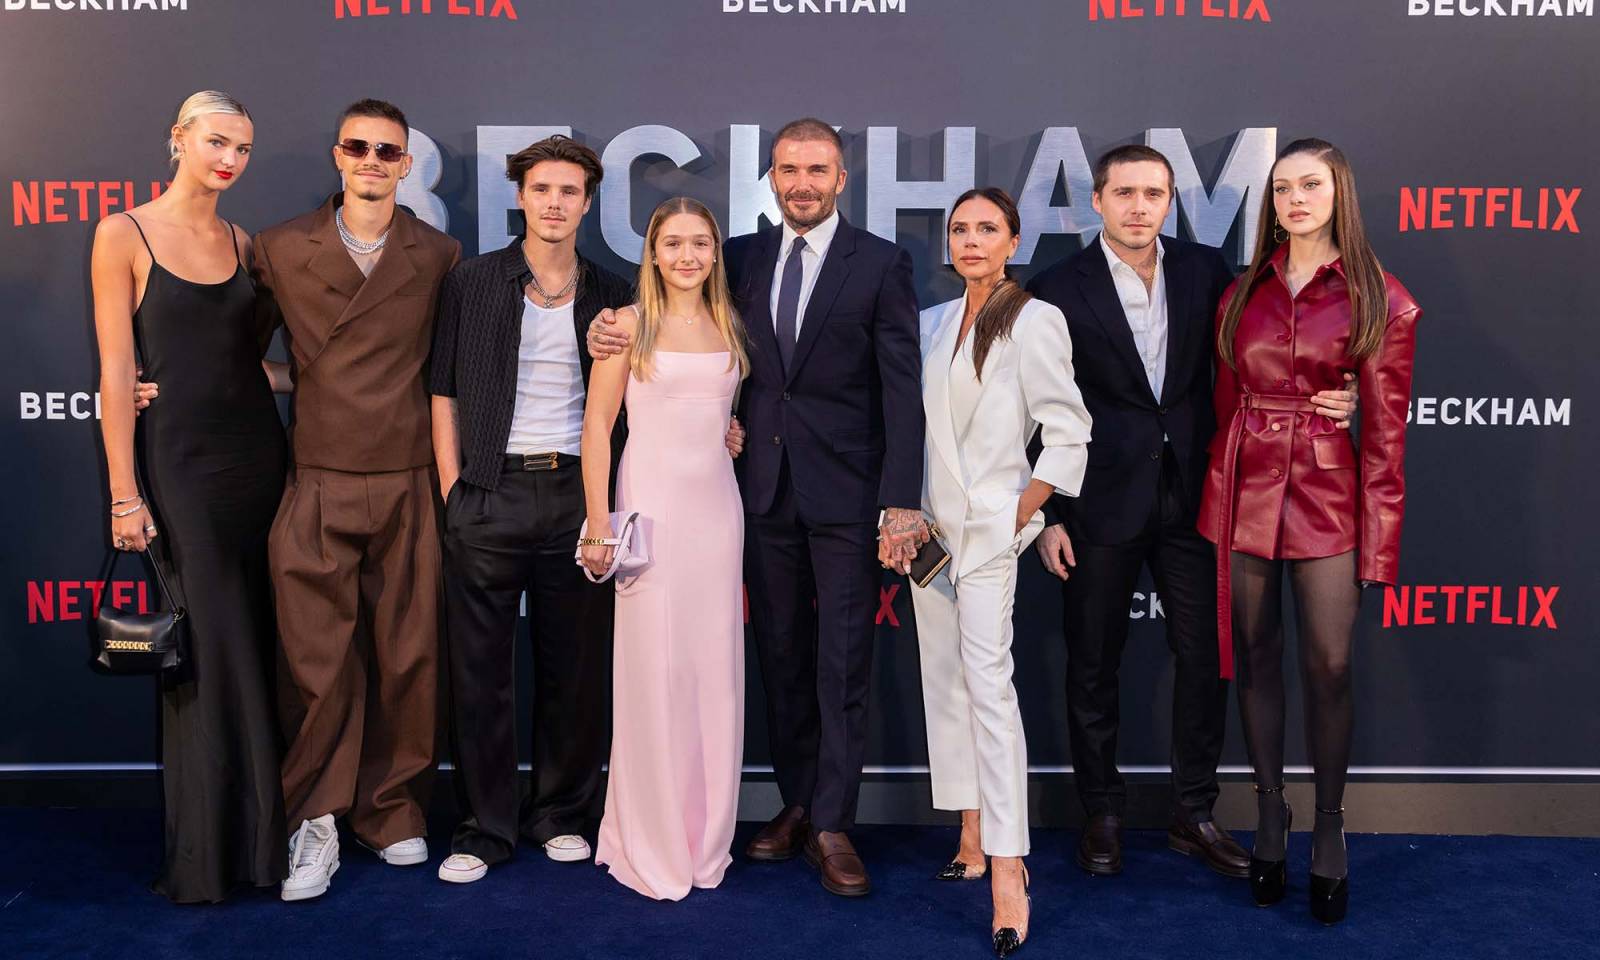 Rodzina Beckhamów na premierze serialu Beckham